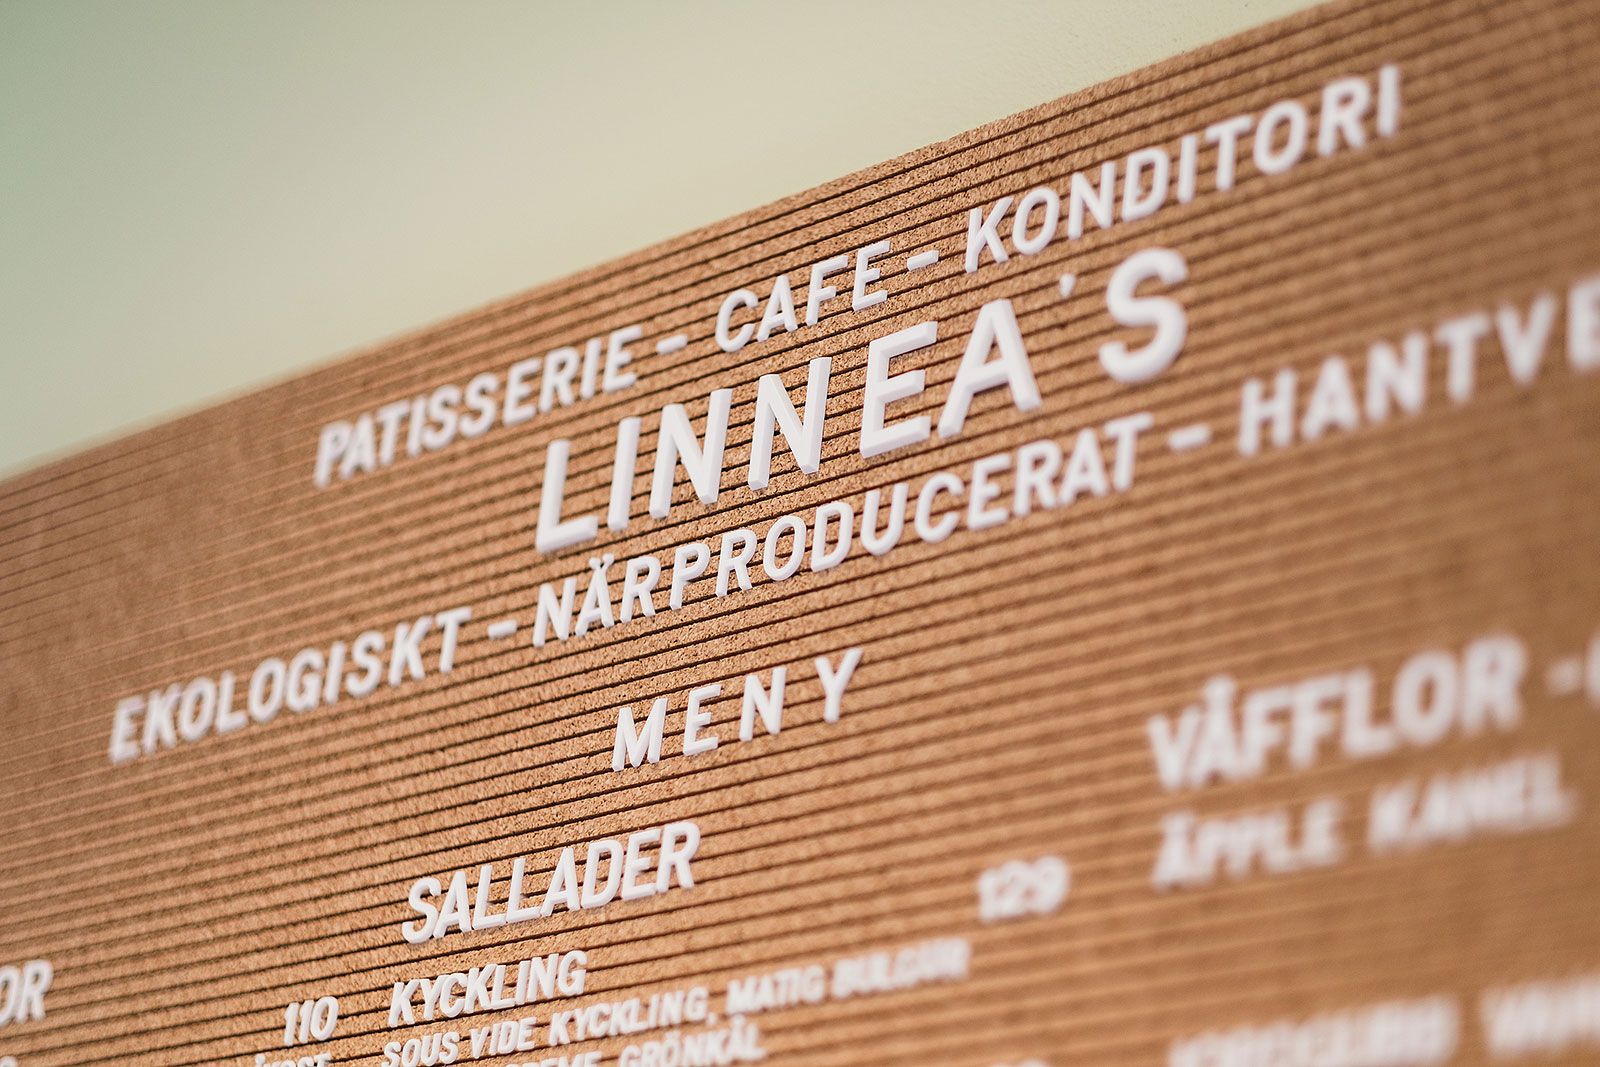 Linnea's Pâtisserie, Café & Konditori – Semlor